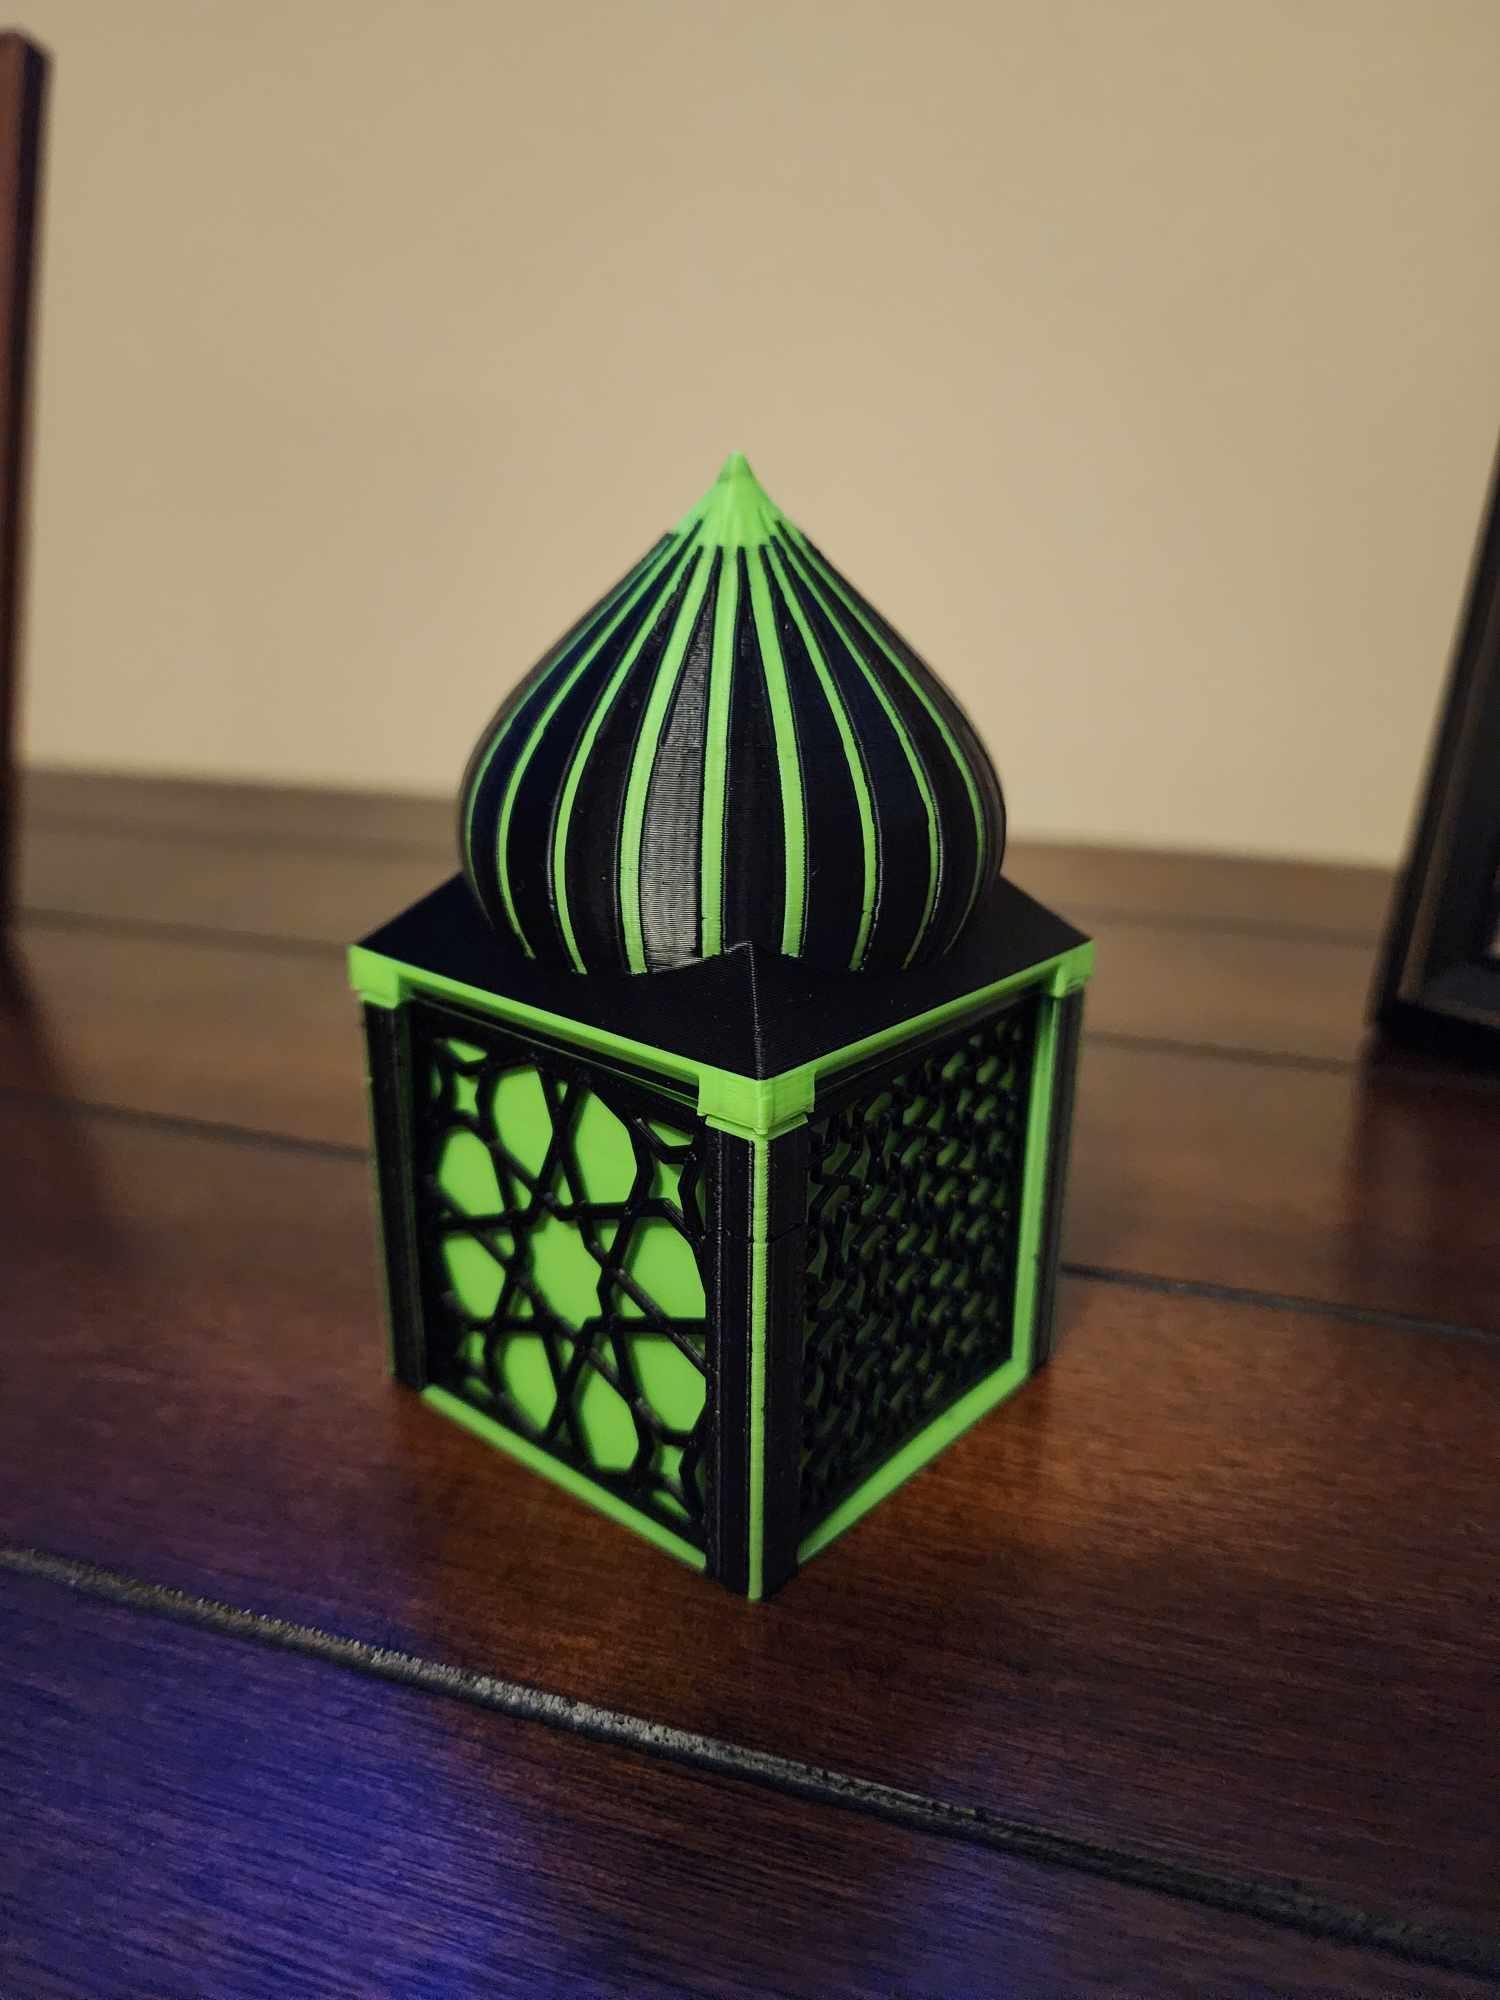 Eid gift box remix.3mf 3d model